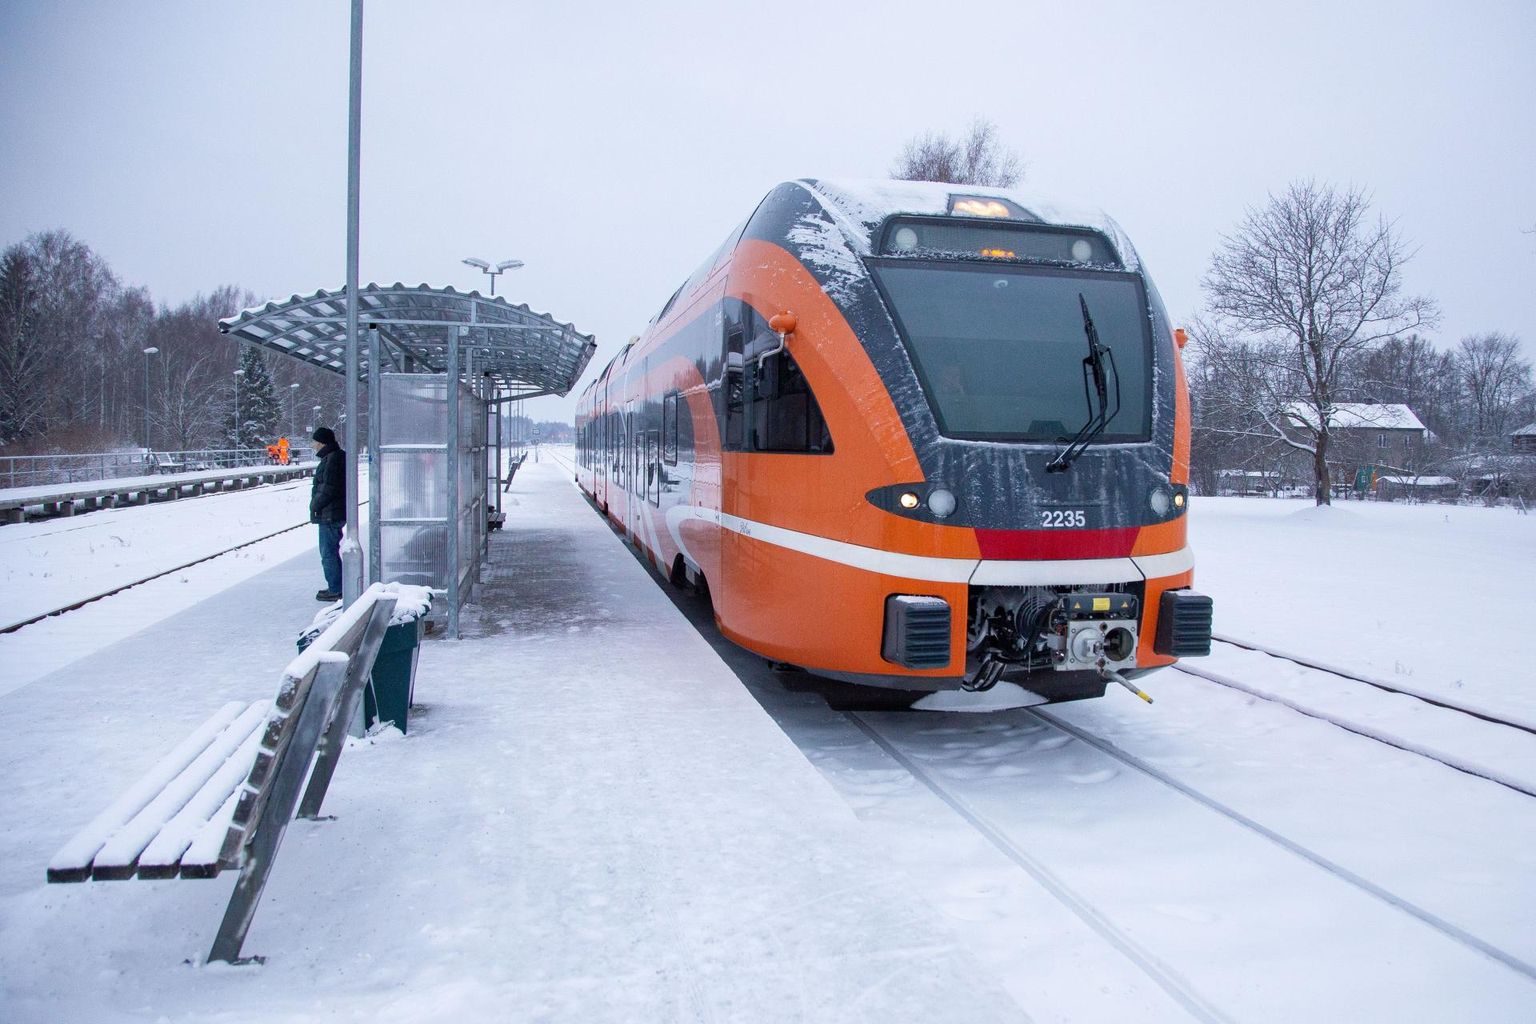 Škoda Vagonka ning Škoda Transportationi konsortsium sõlmisid AS Eesti Liinirongidega (Elron) lepingu kahesüsteemsete elektrirongide tootmiseks ja tarnimiseks.